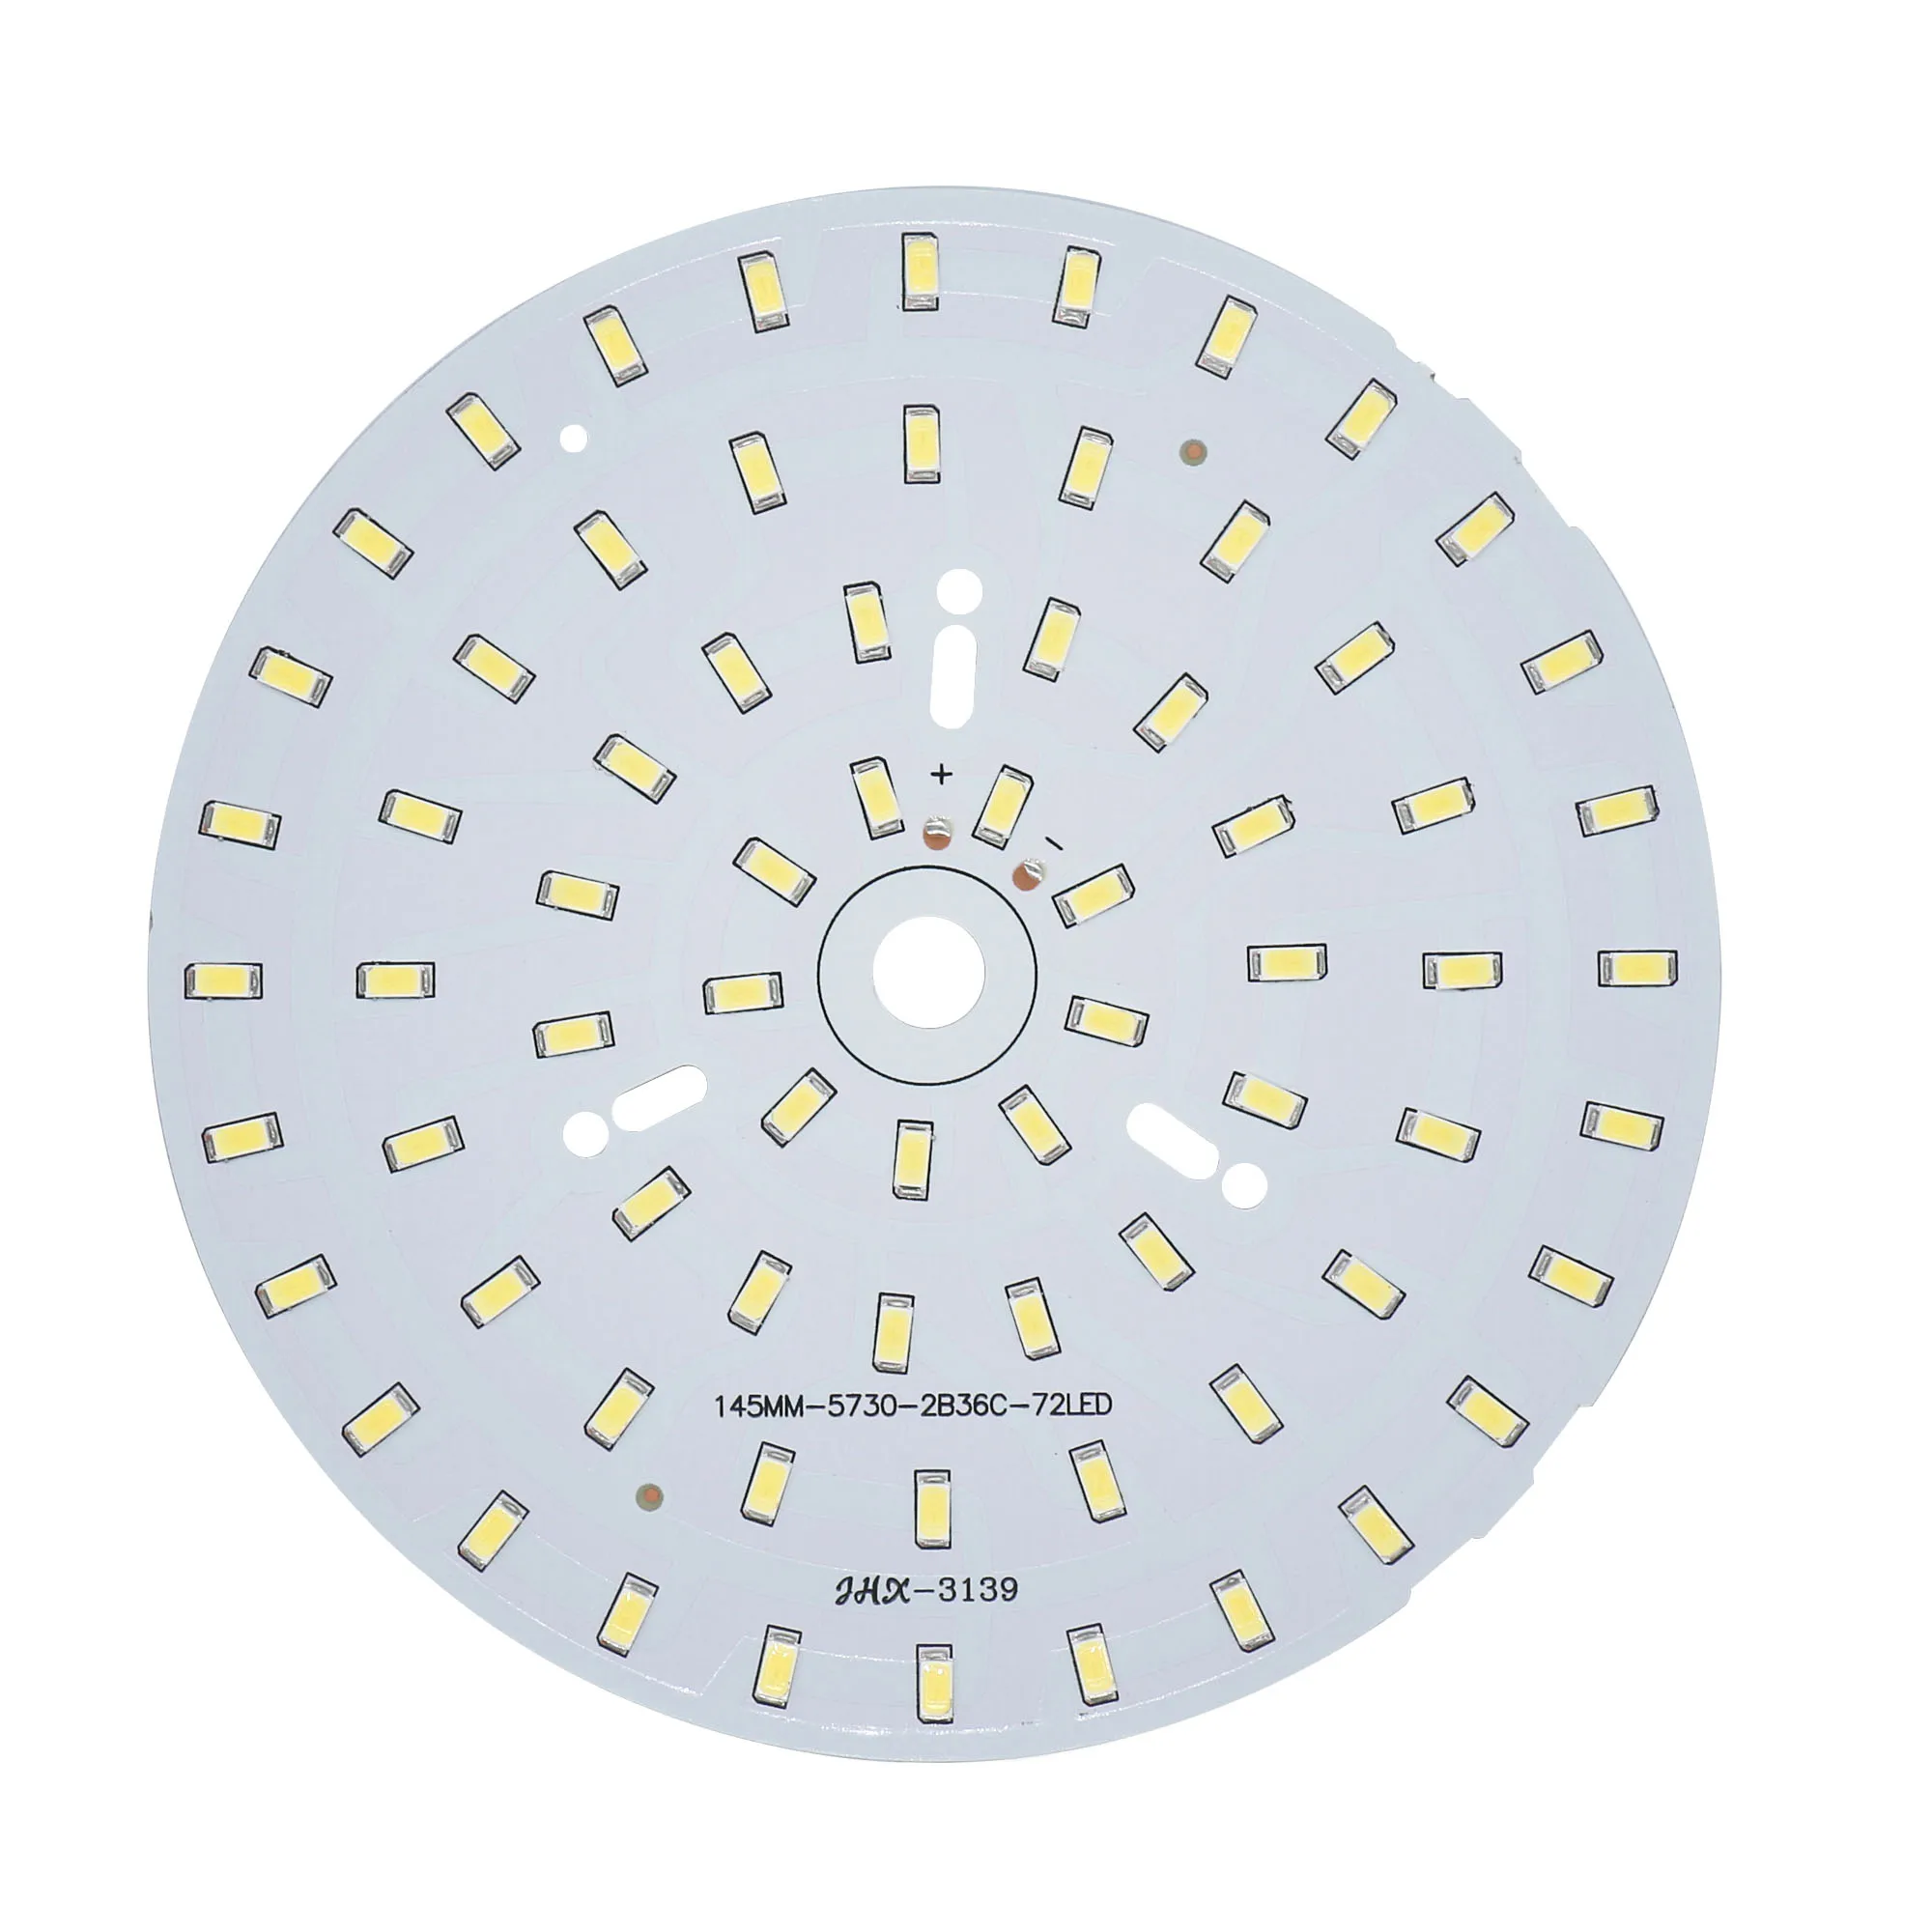 5PCS LED COB Chip 9W 12W 15W 18W 24W 36W SMD5730 Light Beads 240-260mA DIY For Led Downlight Cold/Warm white Lighting Spotlight enlarge